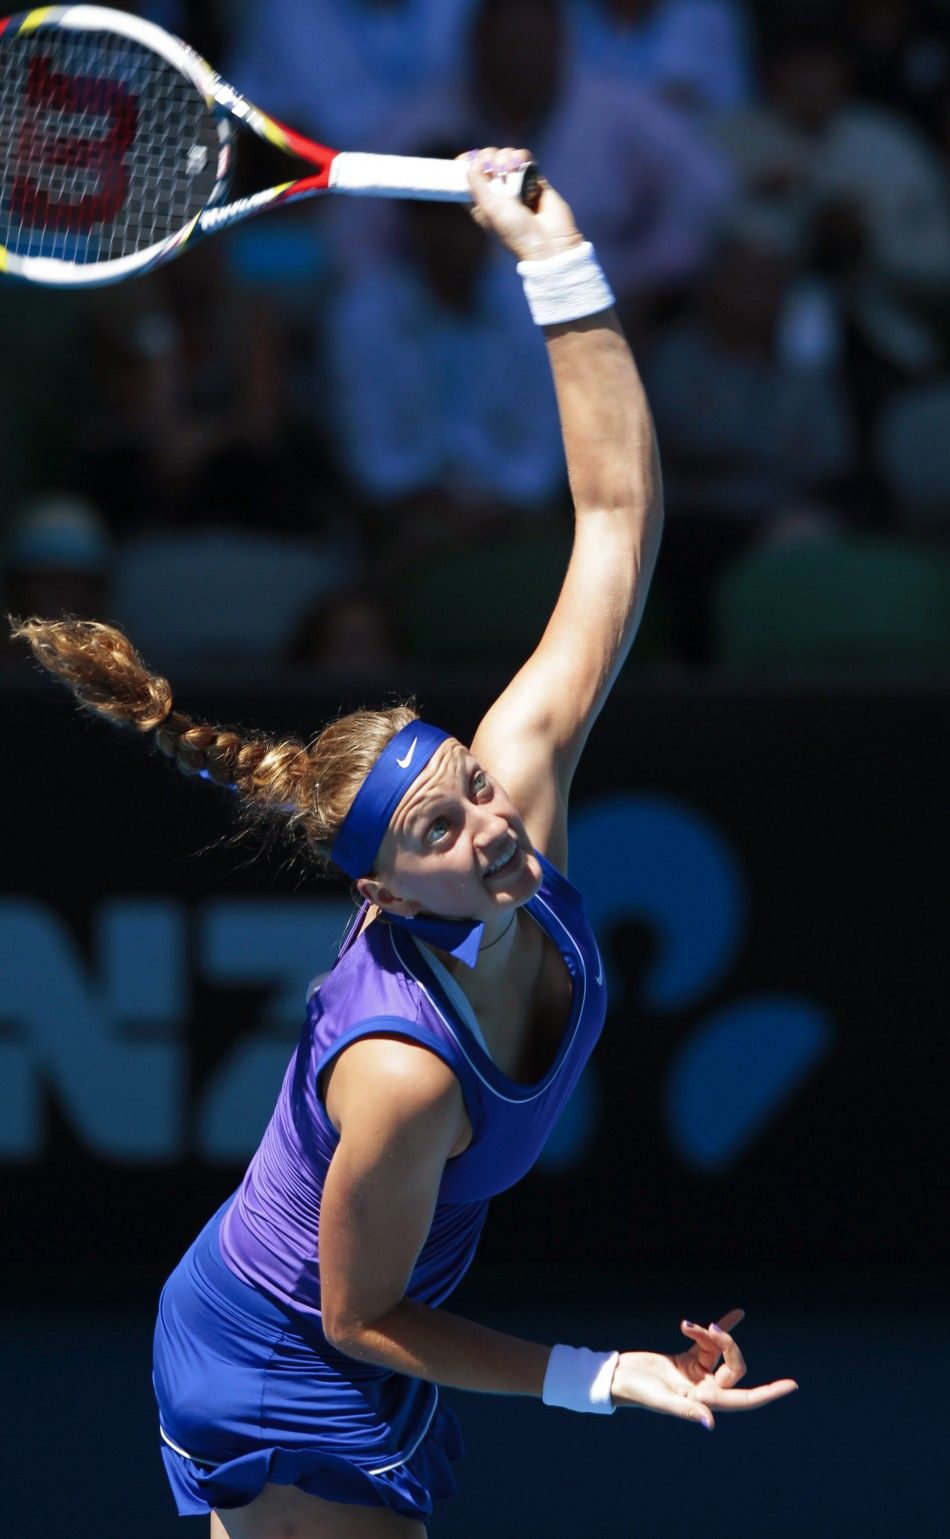 Maria Sharapova-Petra Kvitova semi-final